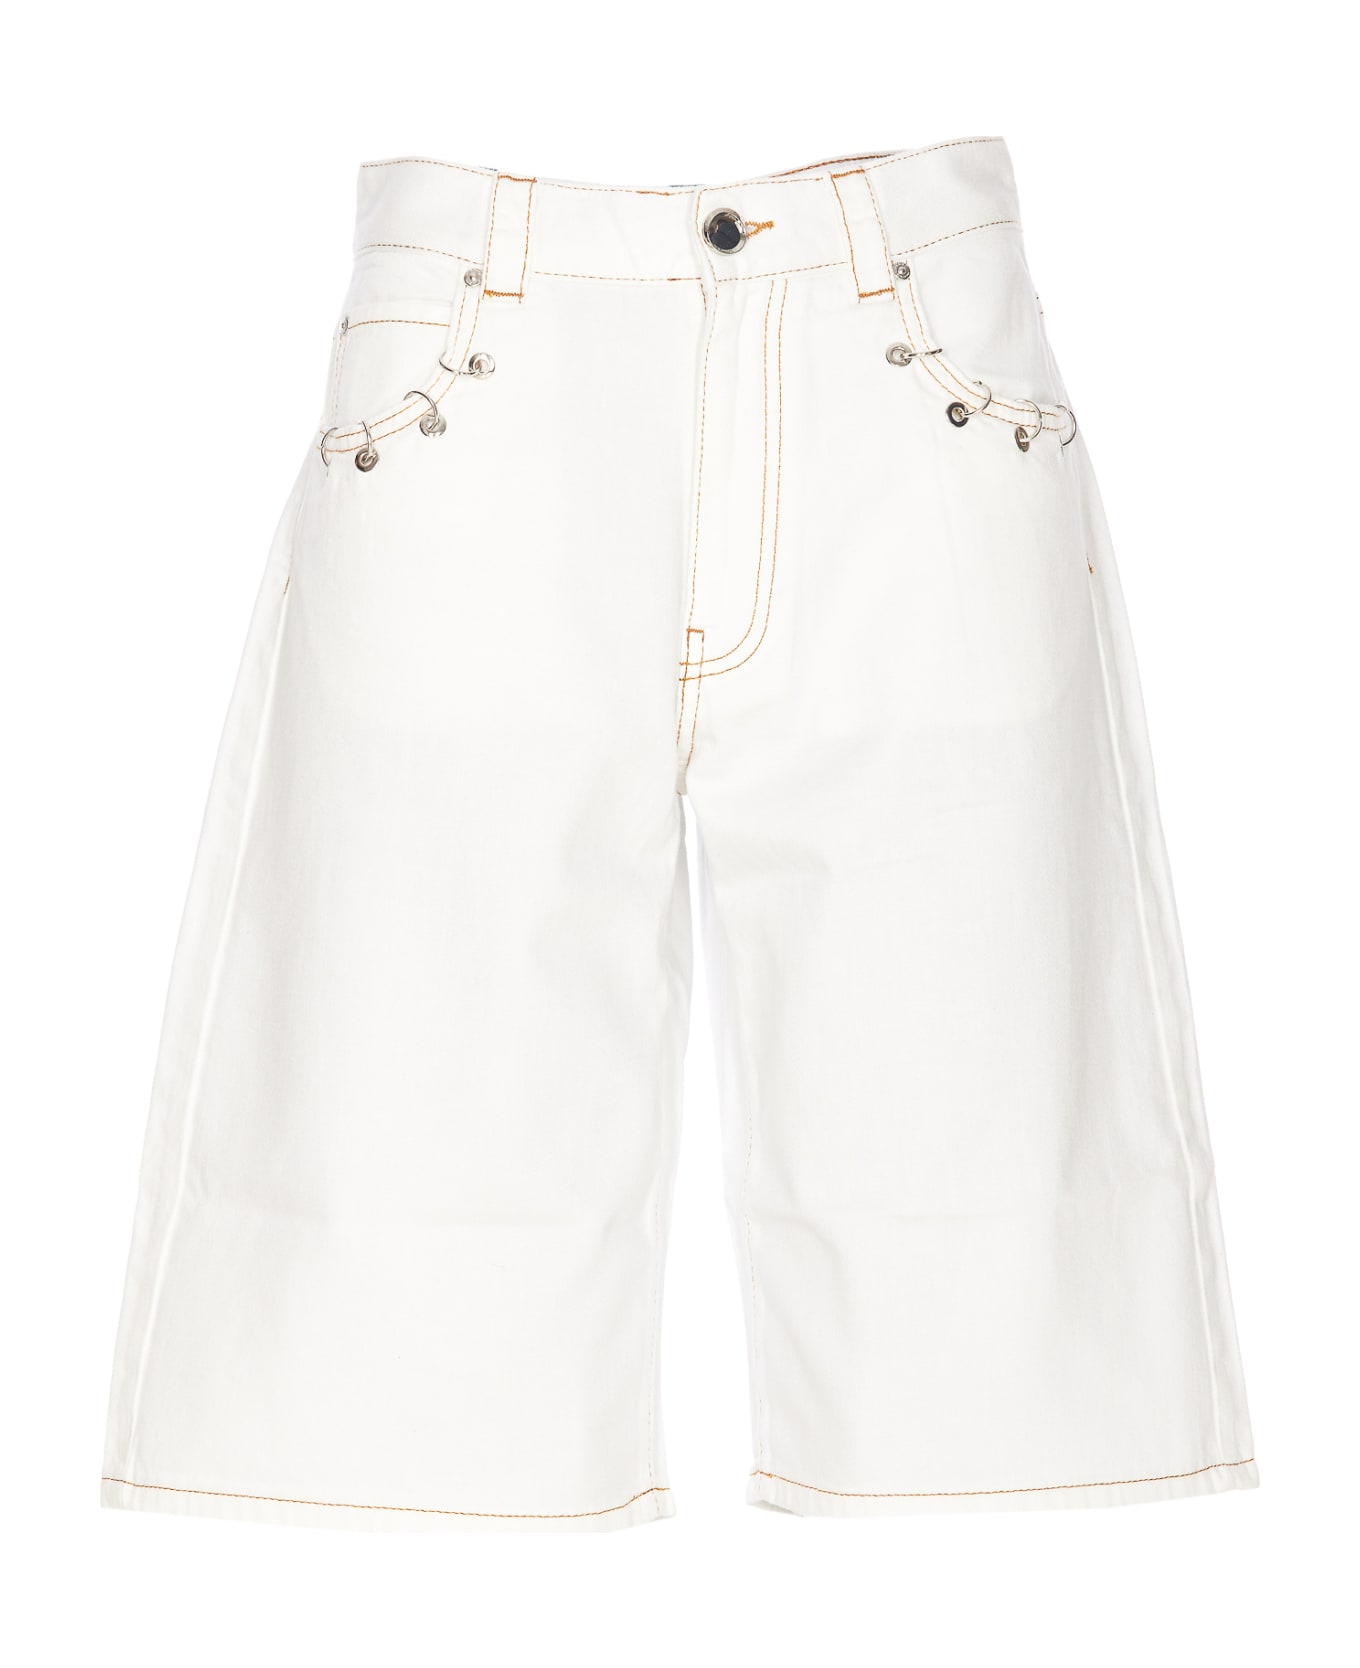 Pinko Xmen Denim Shorts - White ショートパンツ